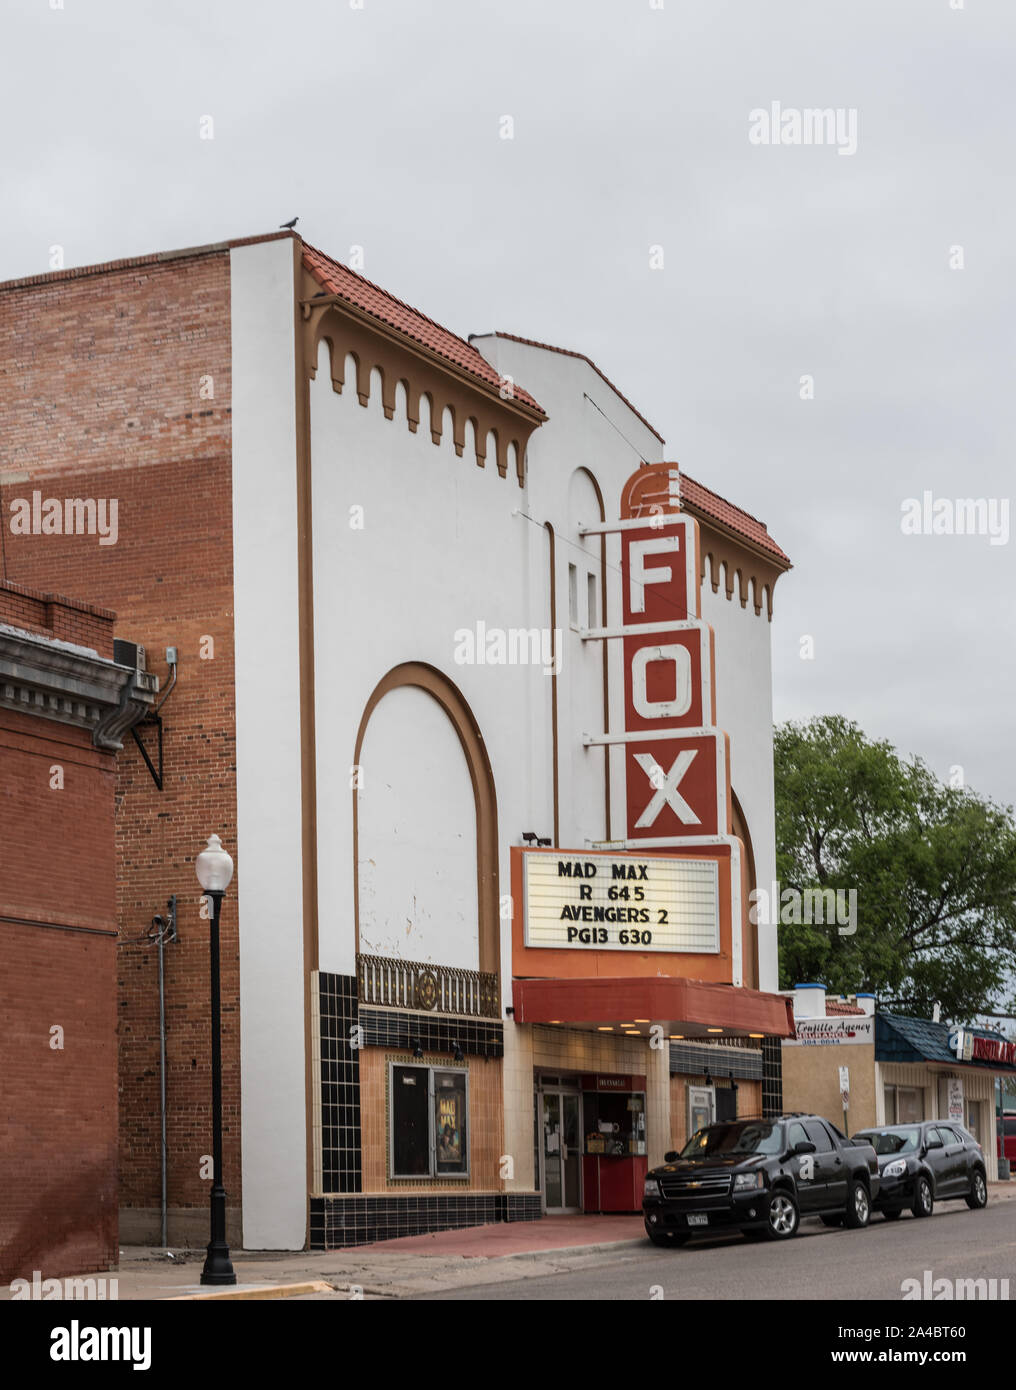 The  Fox Theater building in downtown La Junta, the seat of Otero County, Colorado Stock Photo